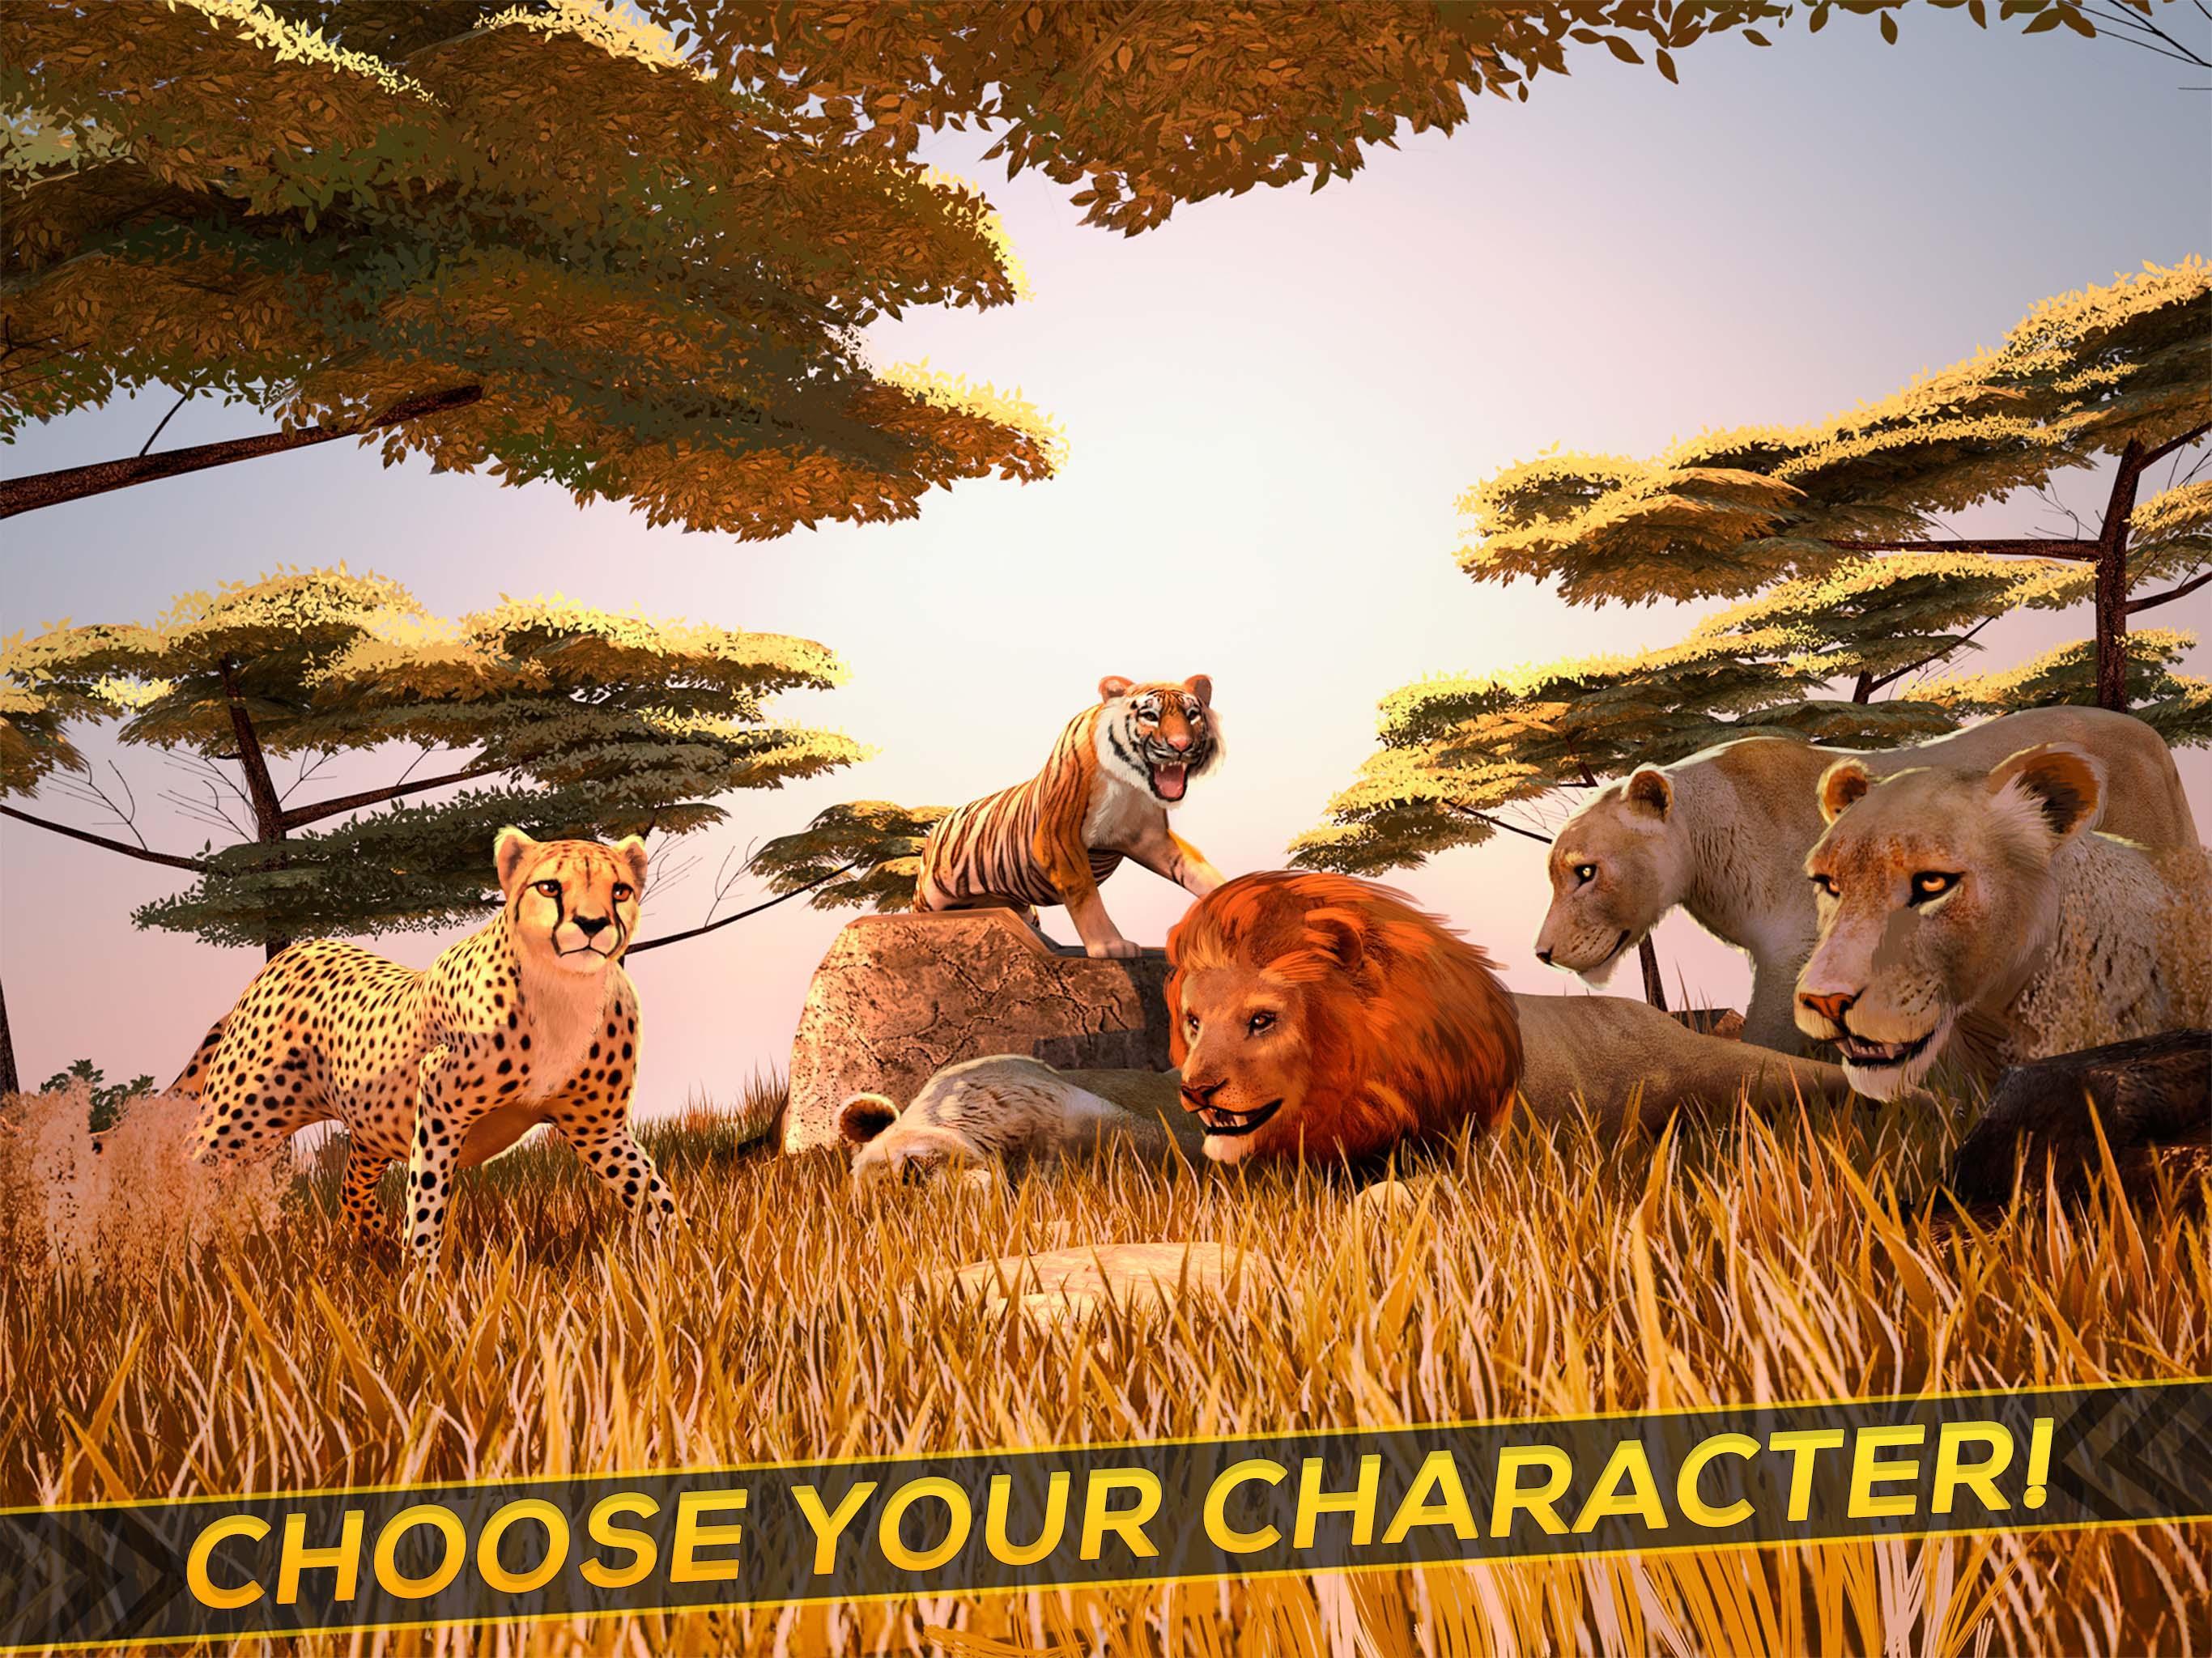 Wild life build. Wild animals игра. Лучшие симуляторы животных на андроид. Звериный тройничок в диких условиях из игры Wild Life.